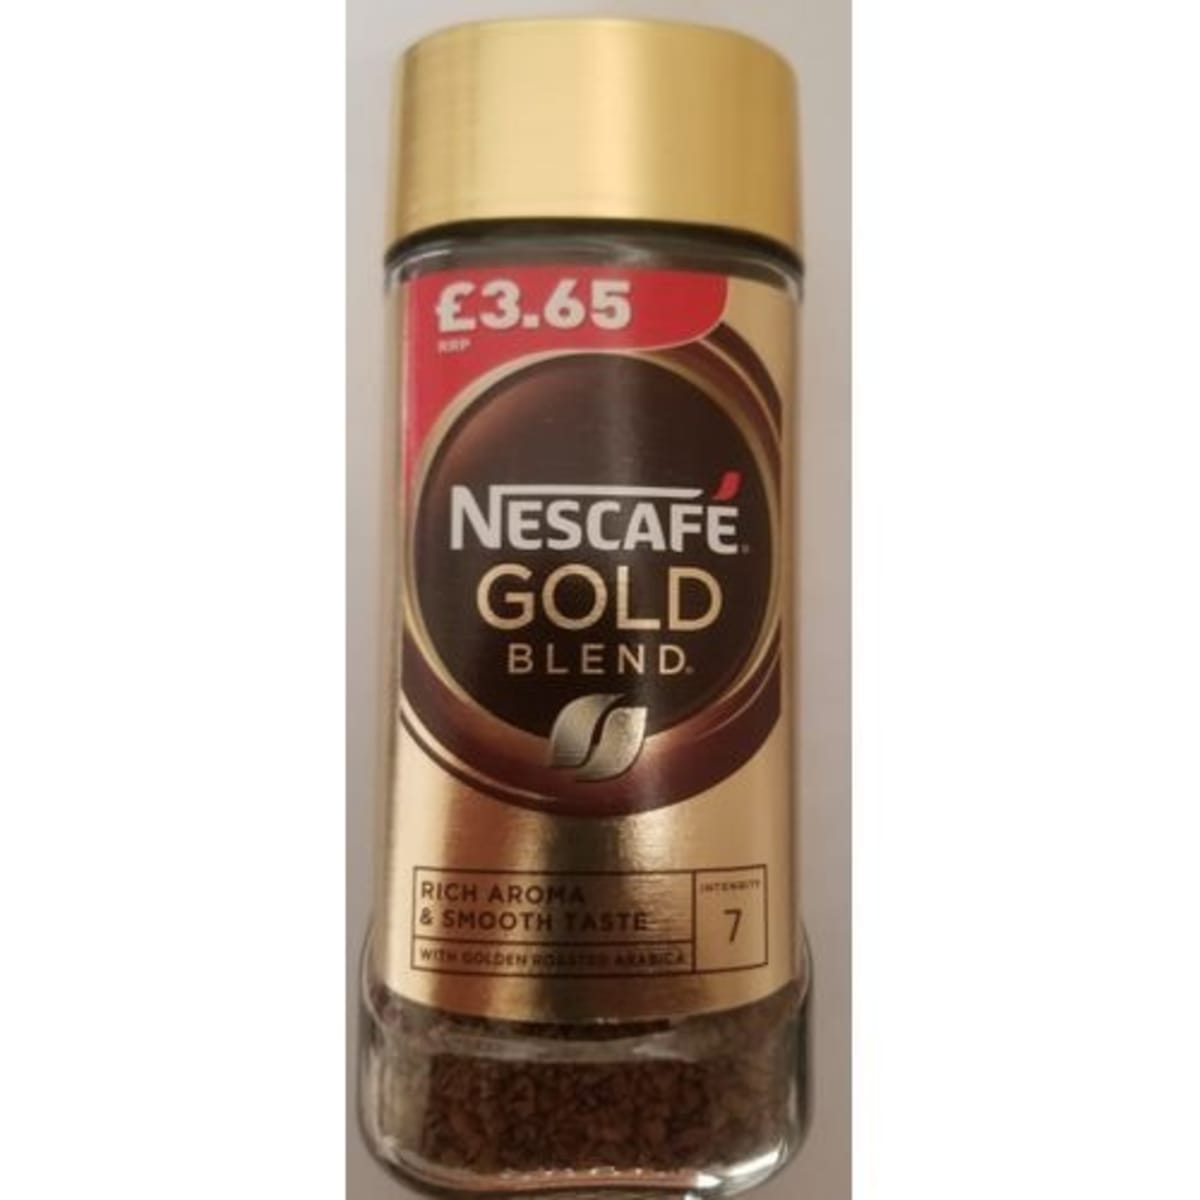 Nescafe Gold Blend Coffee - 100g